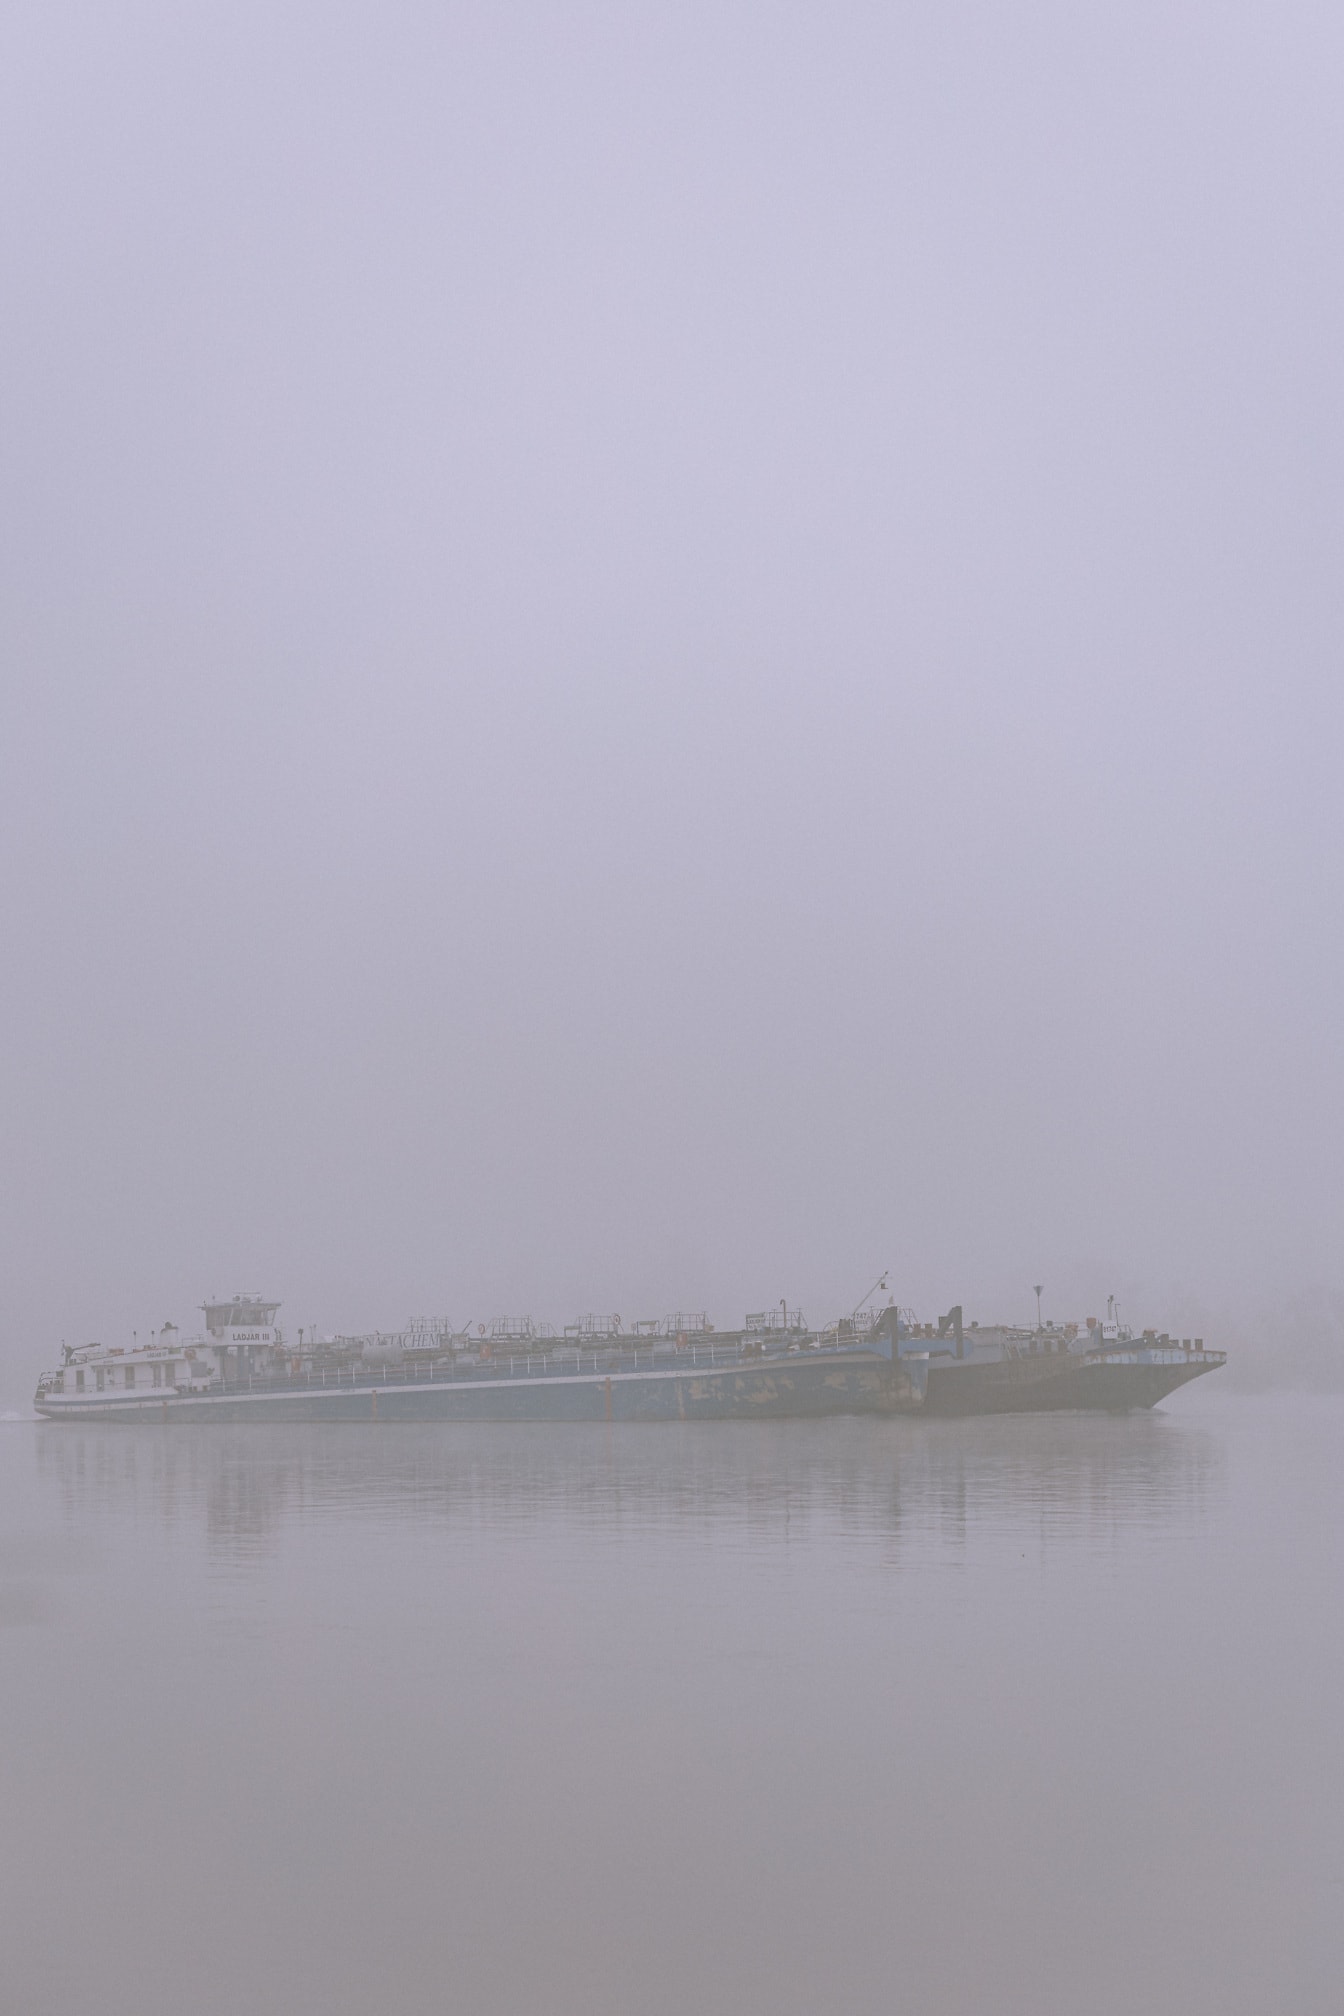 Hình bóng tàu chở hàng sà lan trong sương mù trên sông